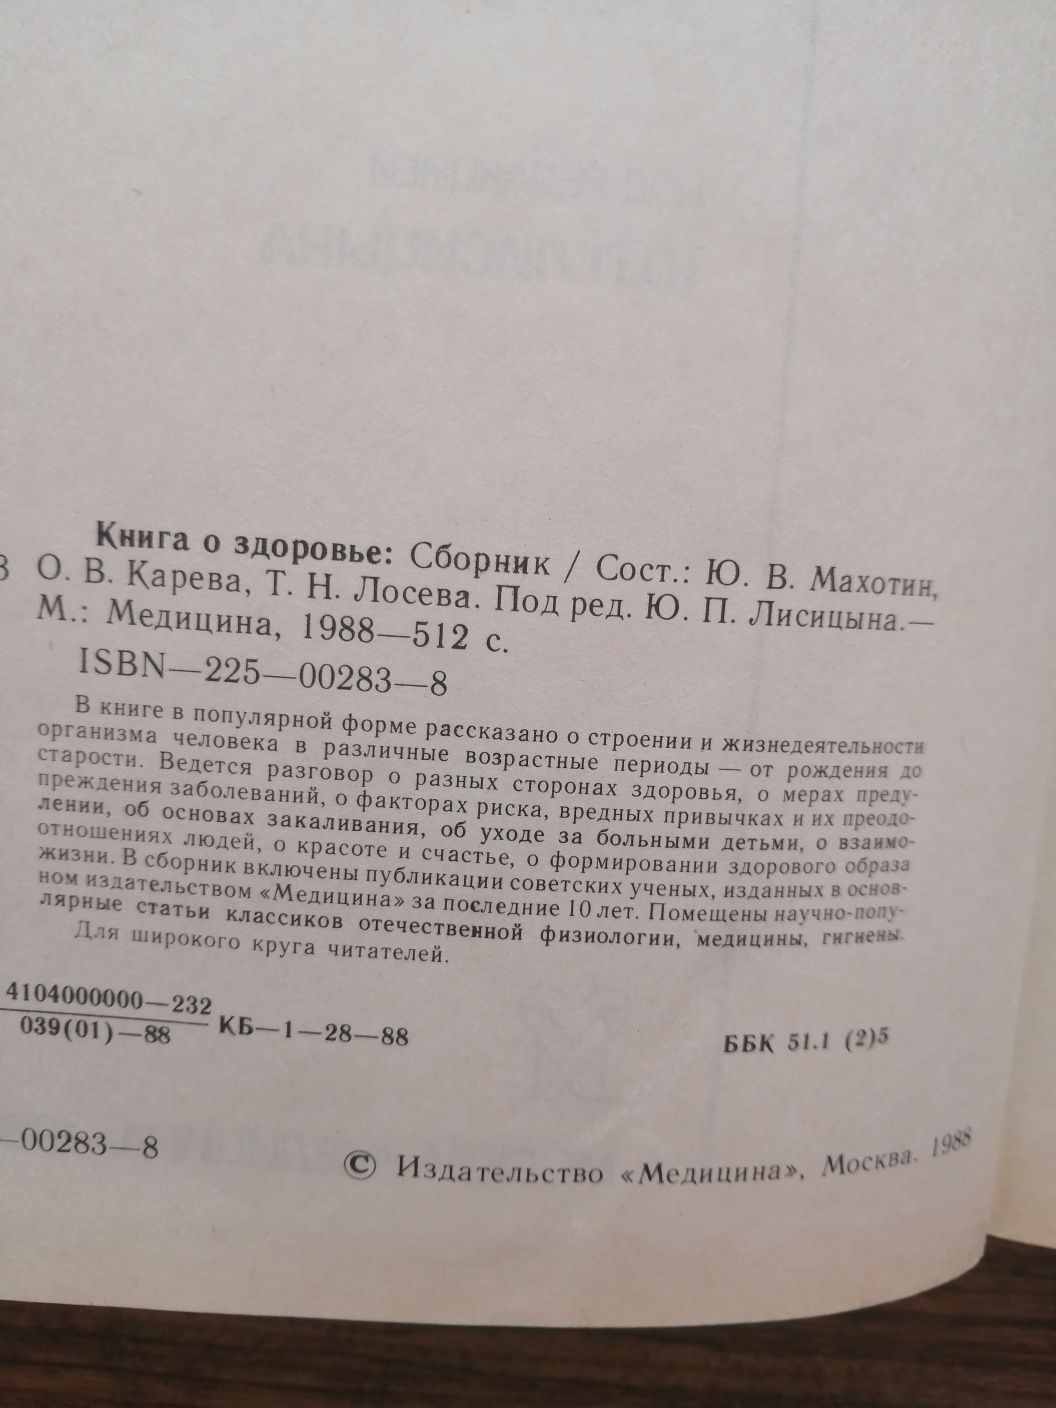 Книга о здоровье Москва 1988 год